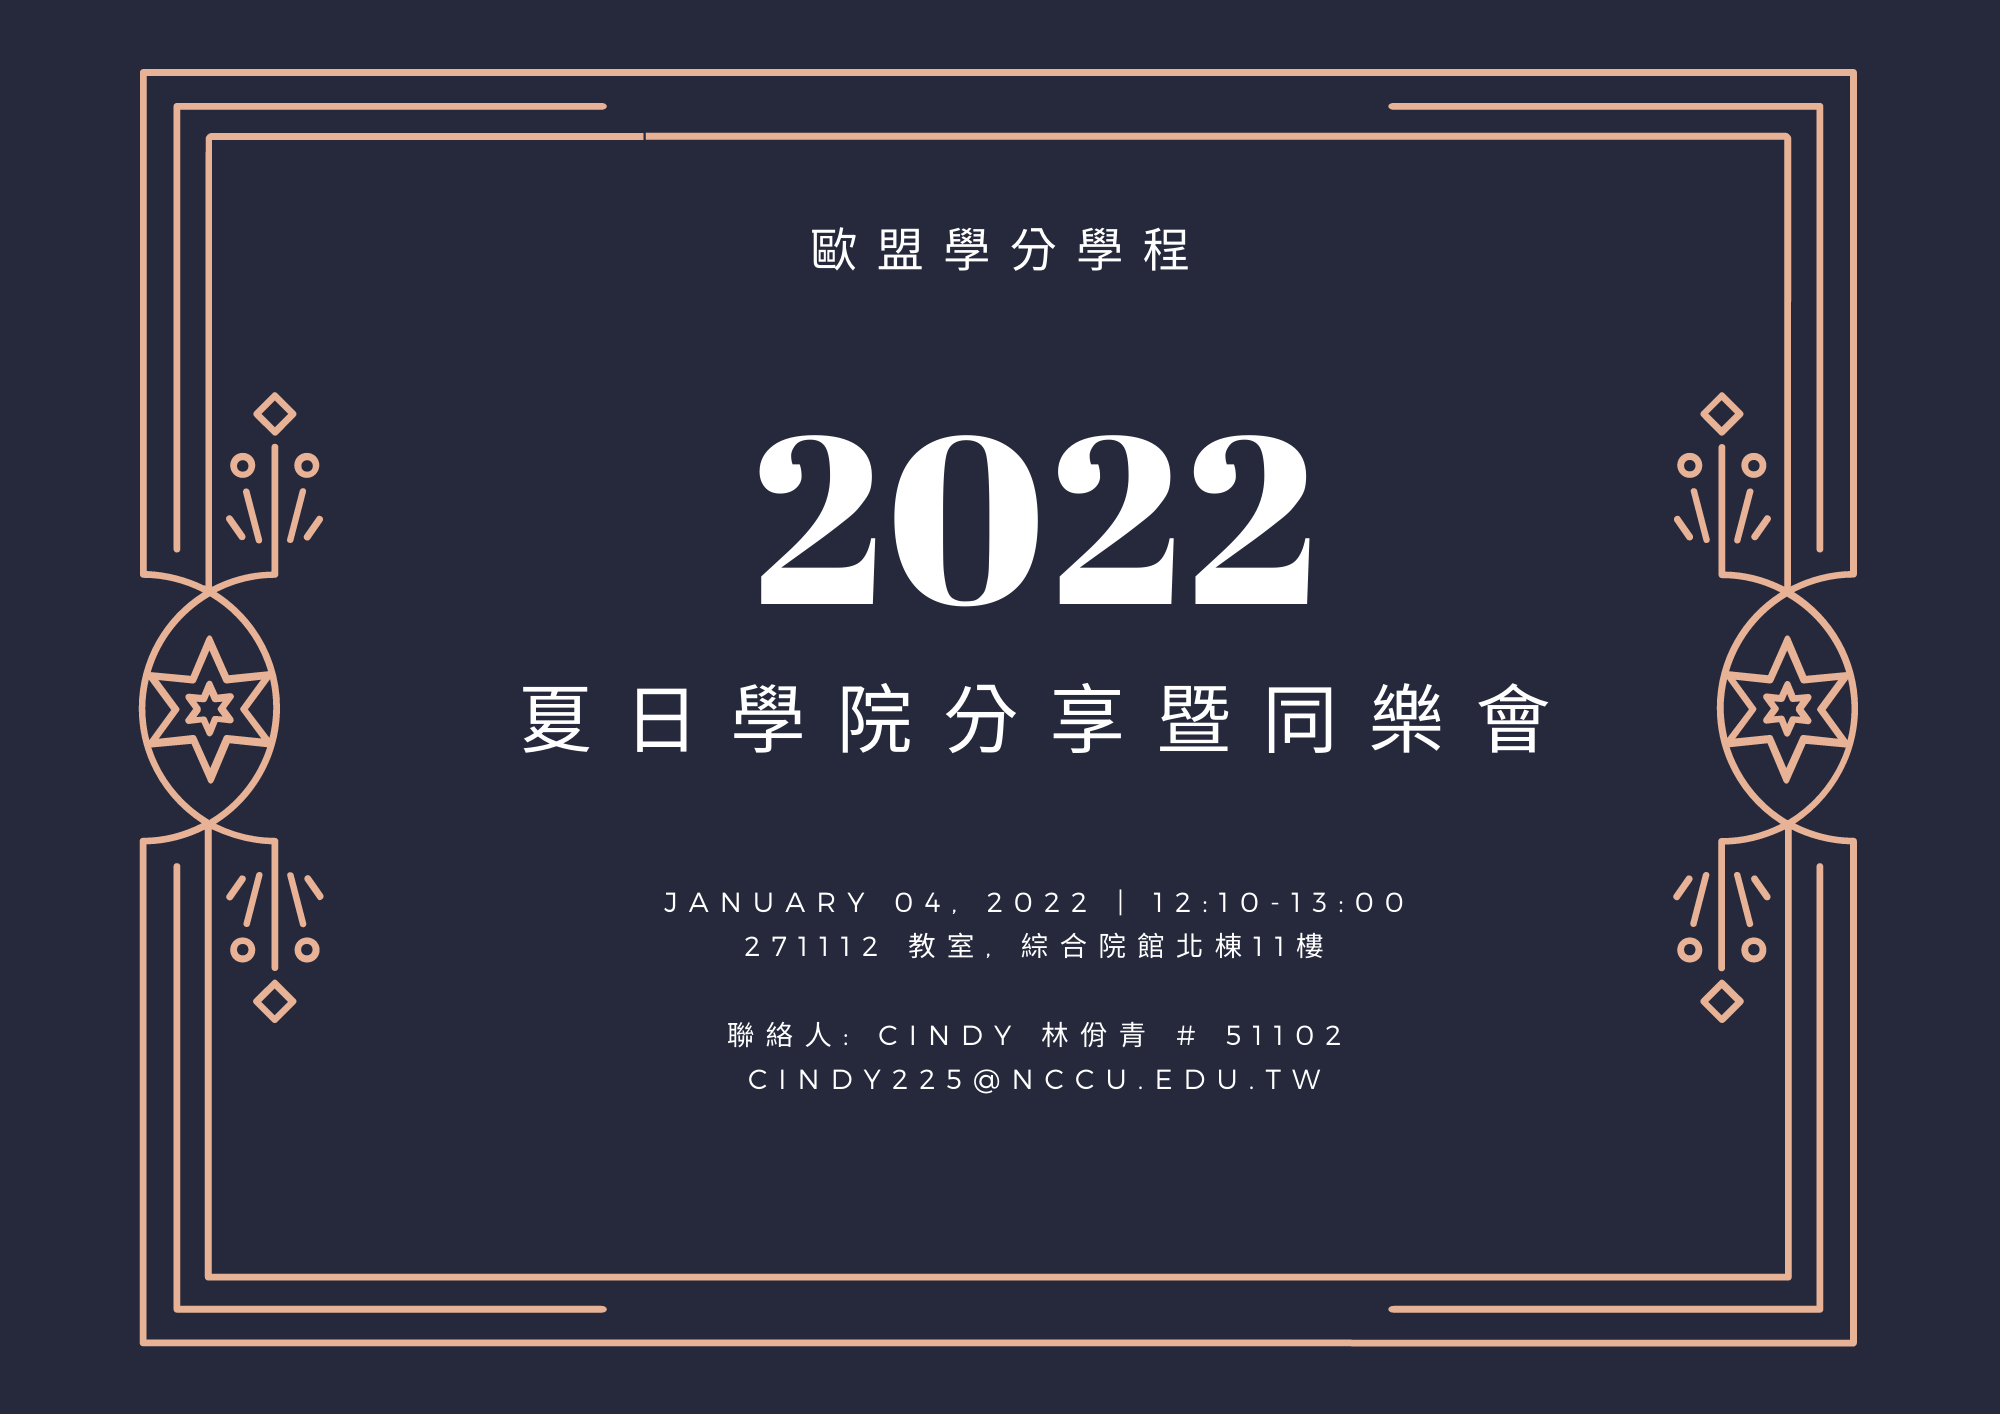 2022夏日學院分享暨同樂會